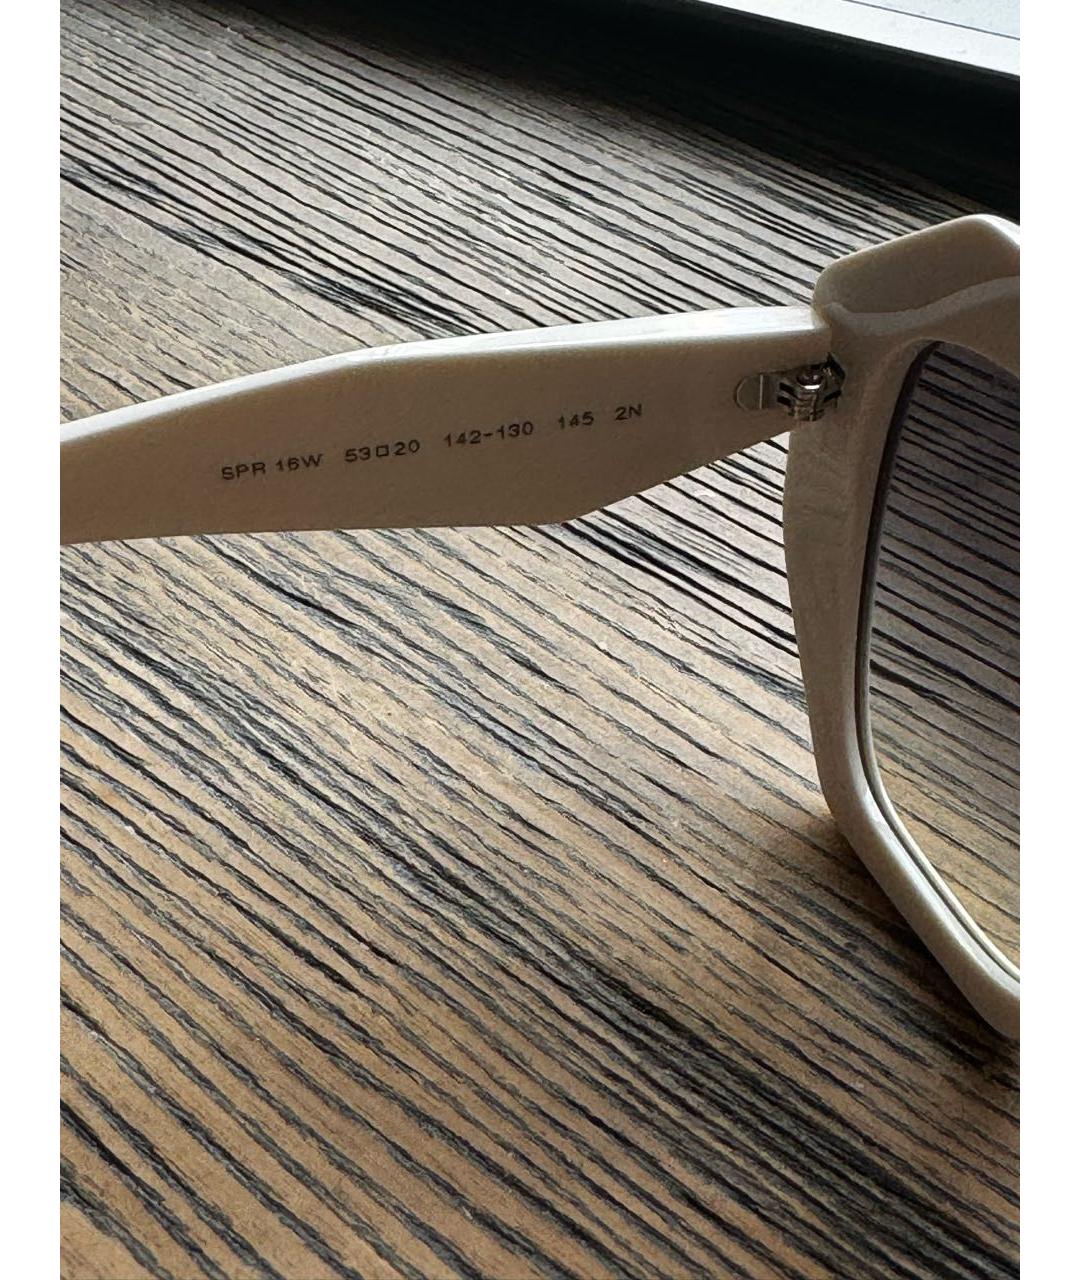 PRADA Белые пластиковые солнцезащитные очки, фото 4